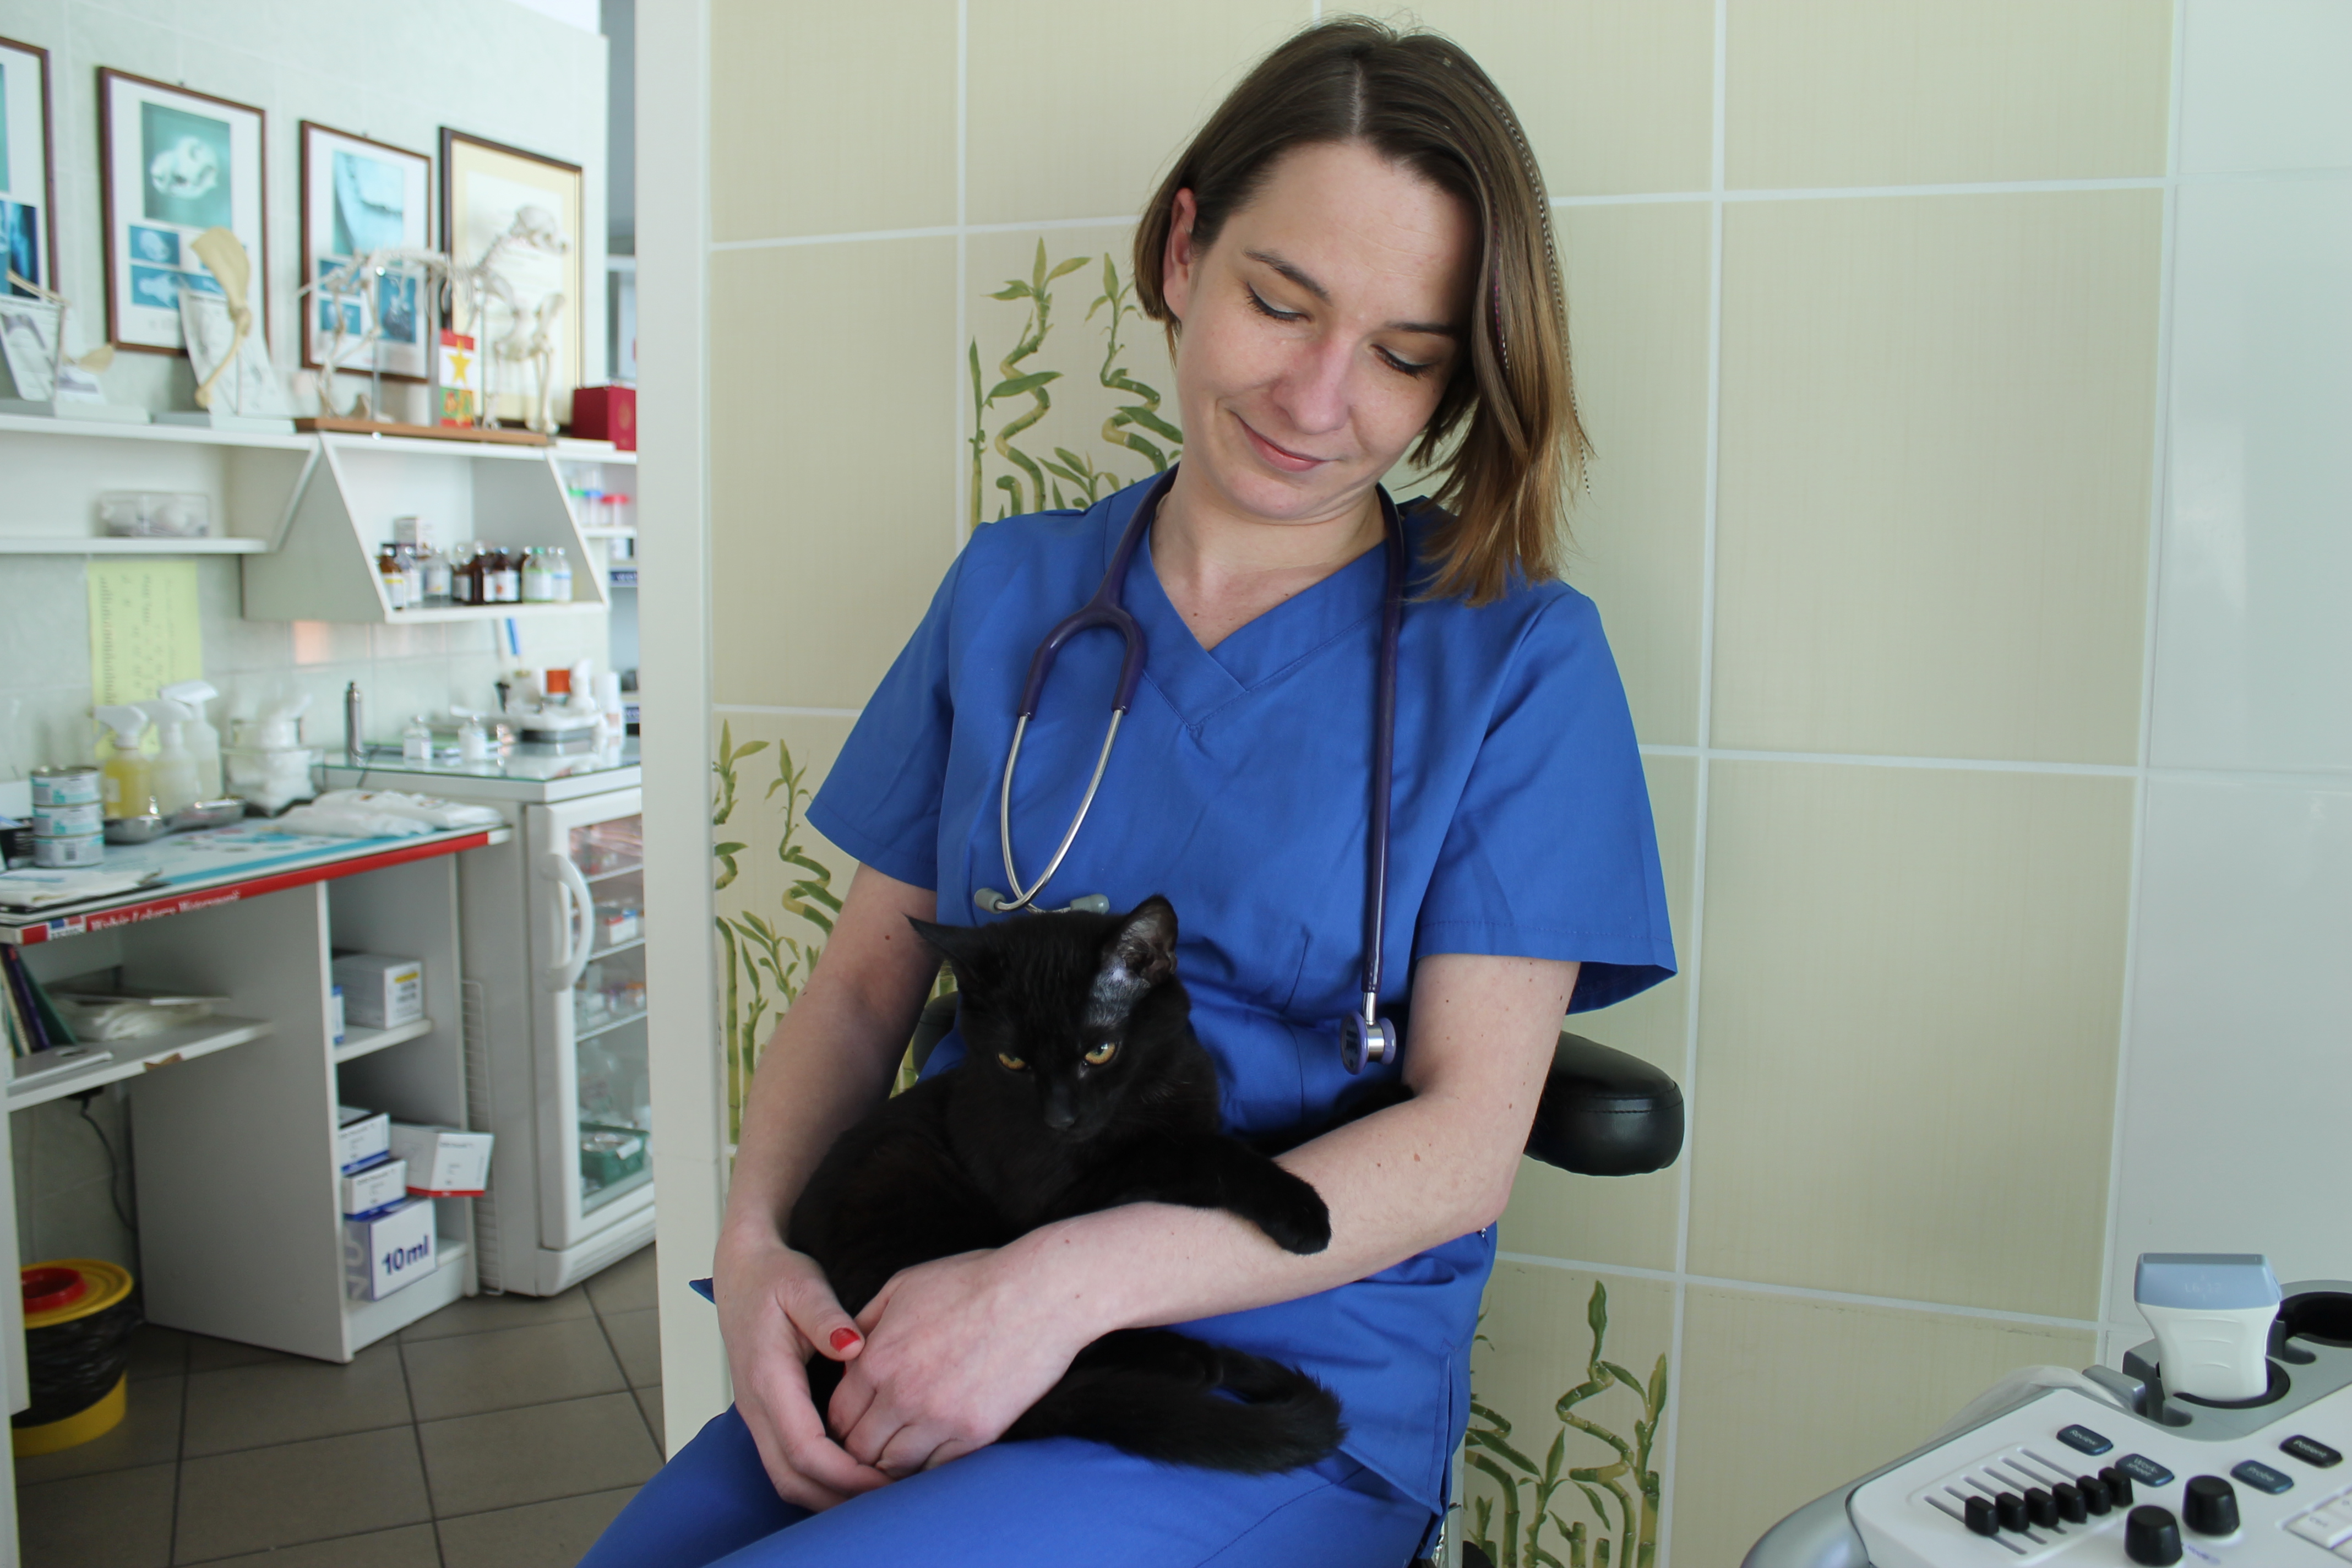 Bezpłatna sterylizacja kotów w Legnicy (WIDEO)